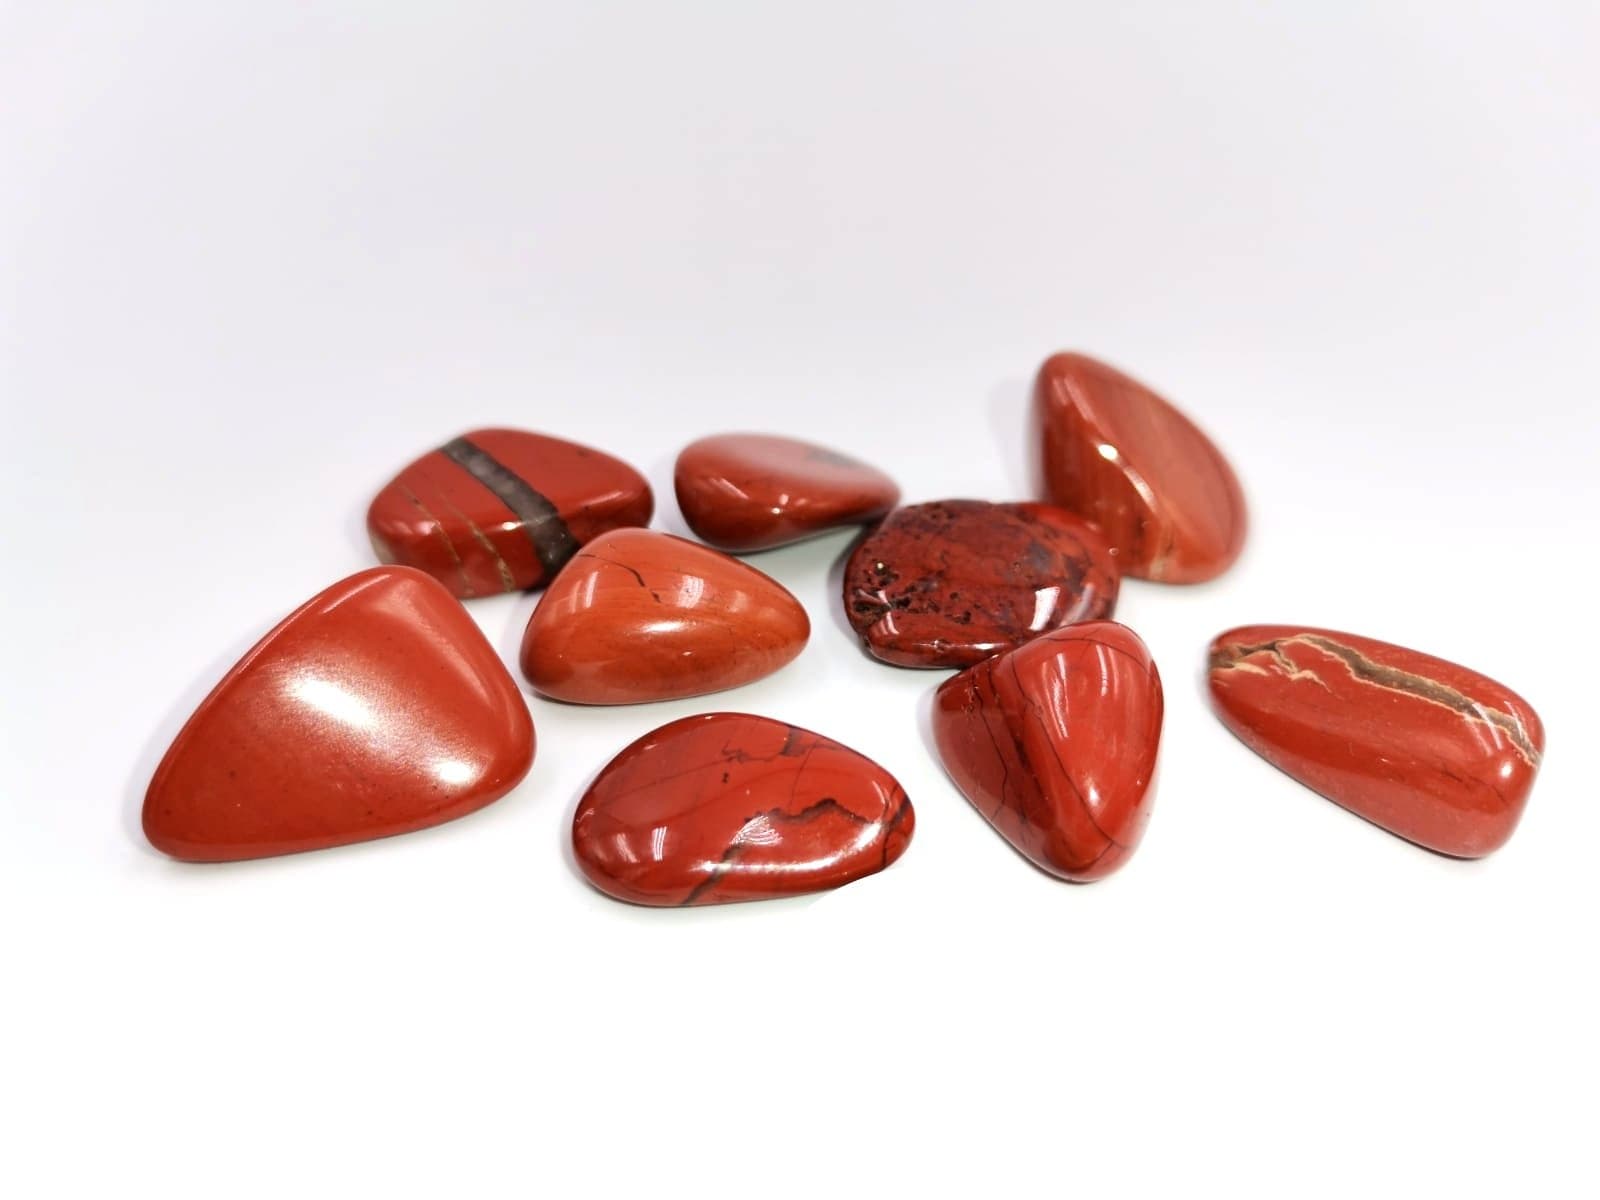 Tenetpietre Diaspro rosso levigato da 20-25 mm. Disponibile in confezioni da 1, 5 e 10 pietre